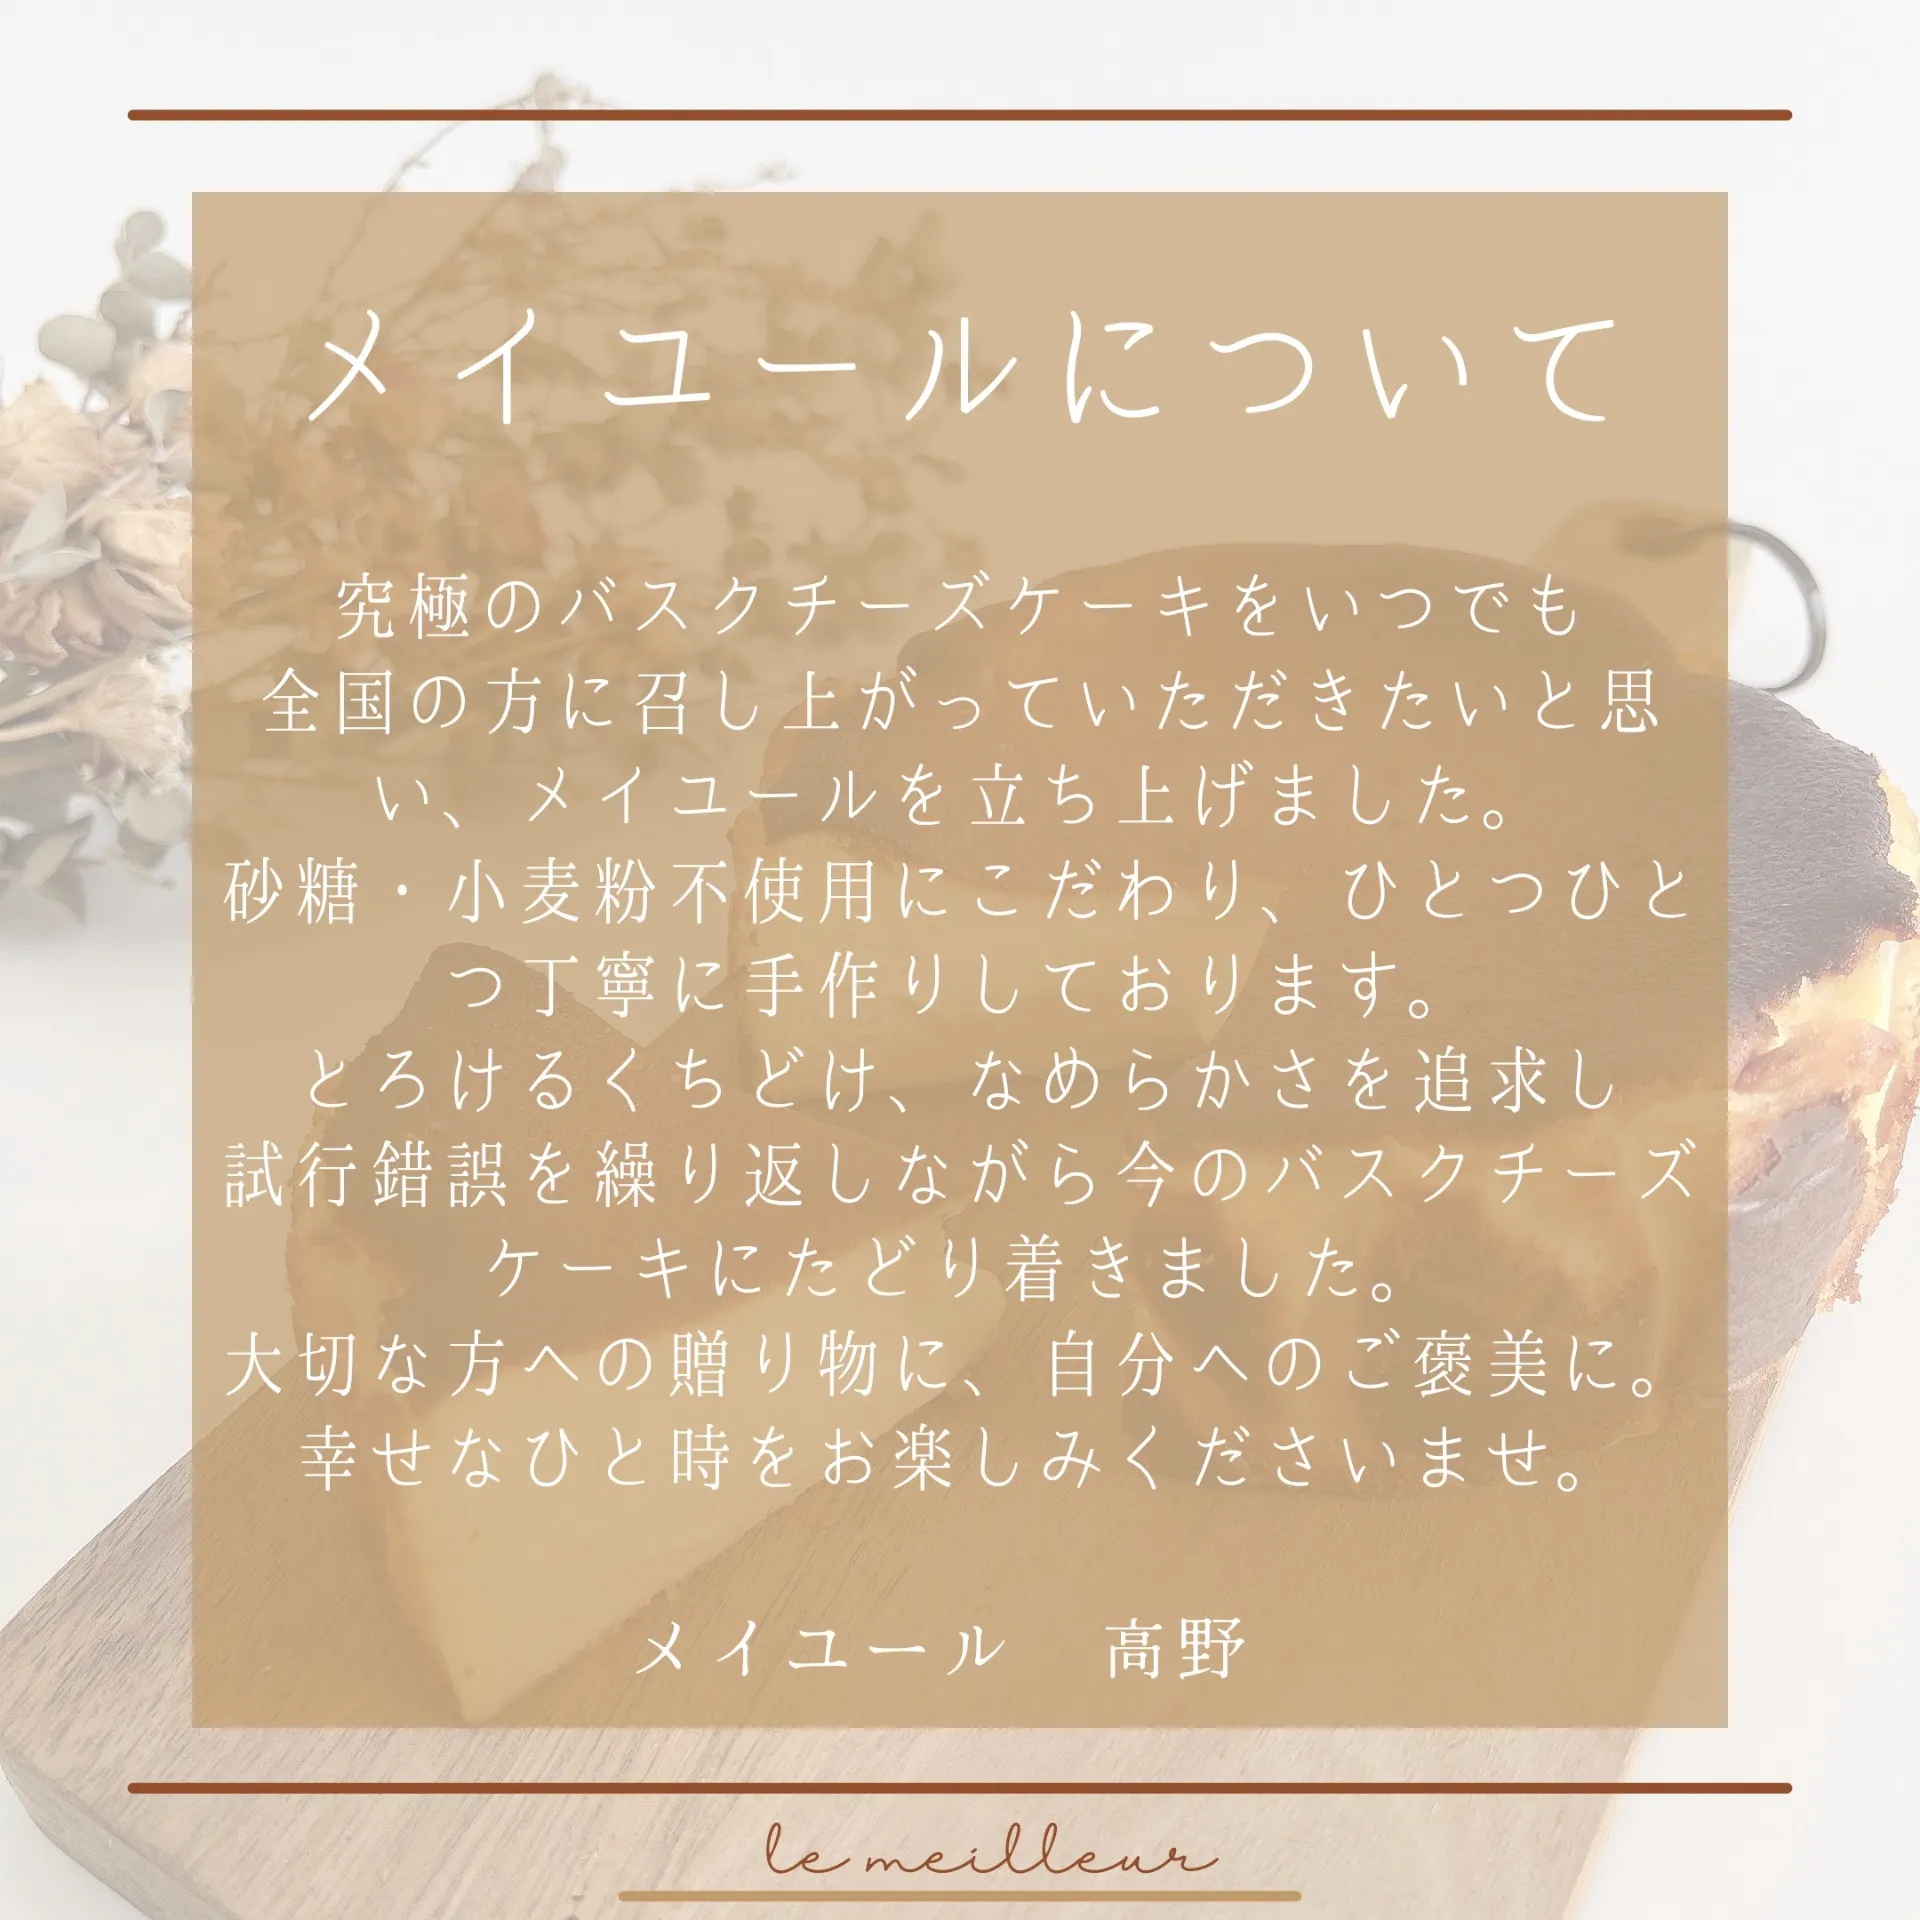 【砂糖・小麦粉不使用】とろけるバスクチーズケーキ(ギフト用プレミアム)